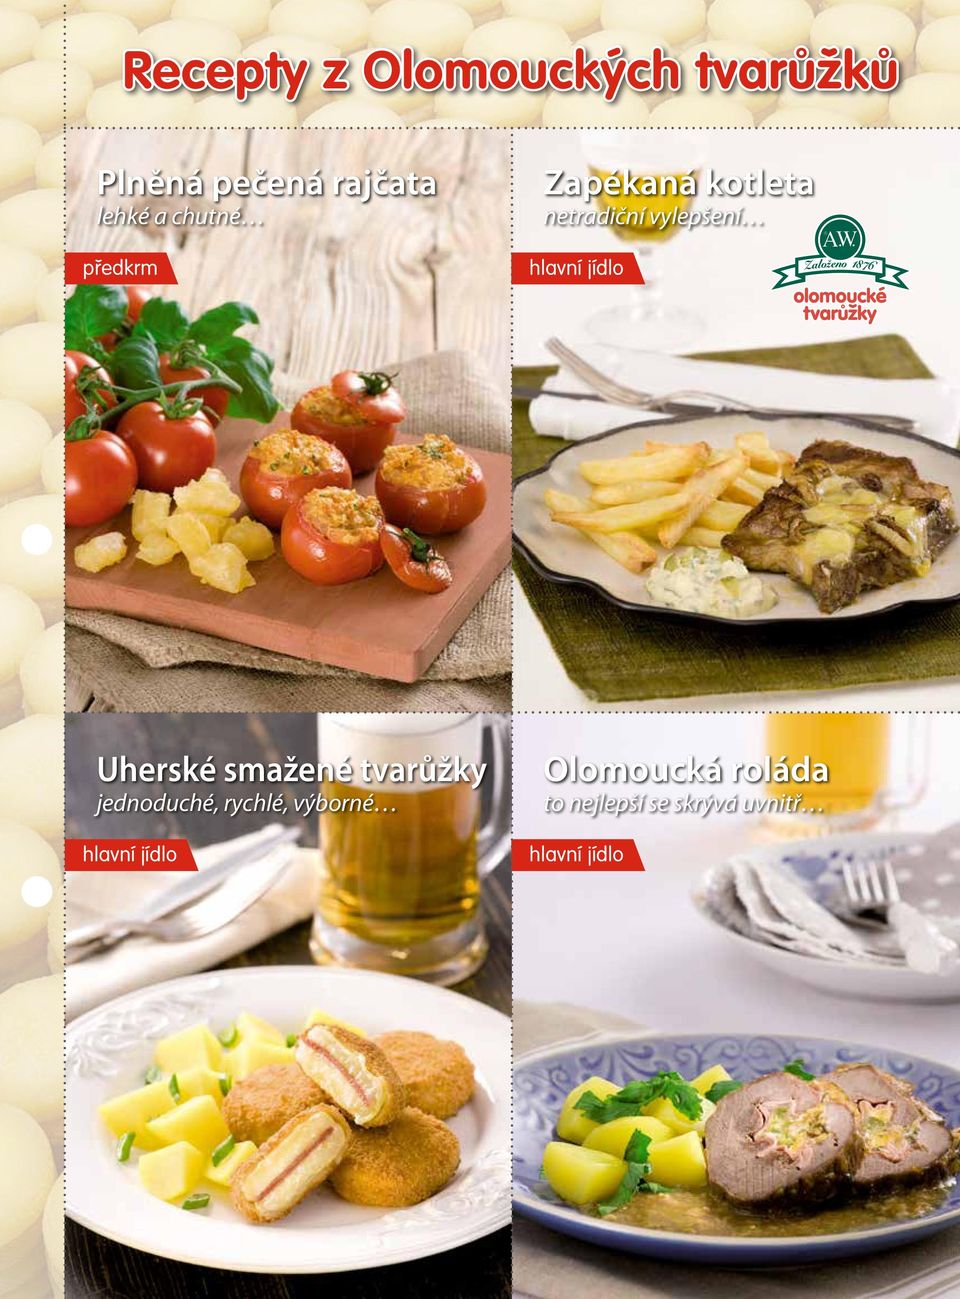 jídlo Uherské smažené tvarůžky jednoduché, rychlé, výborné